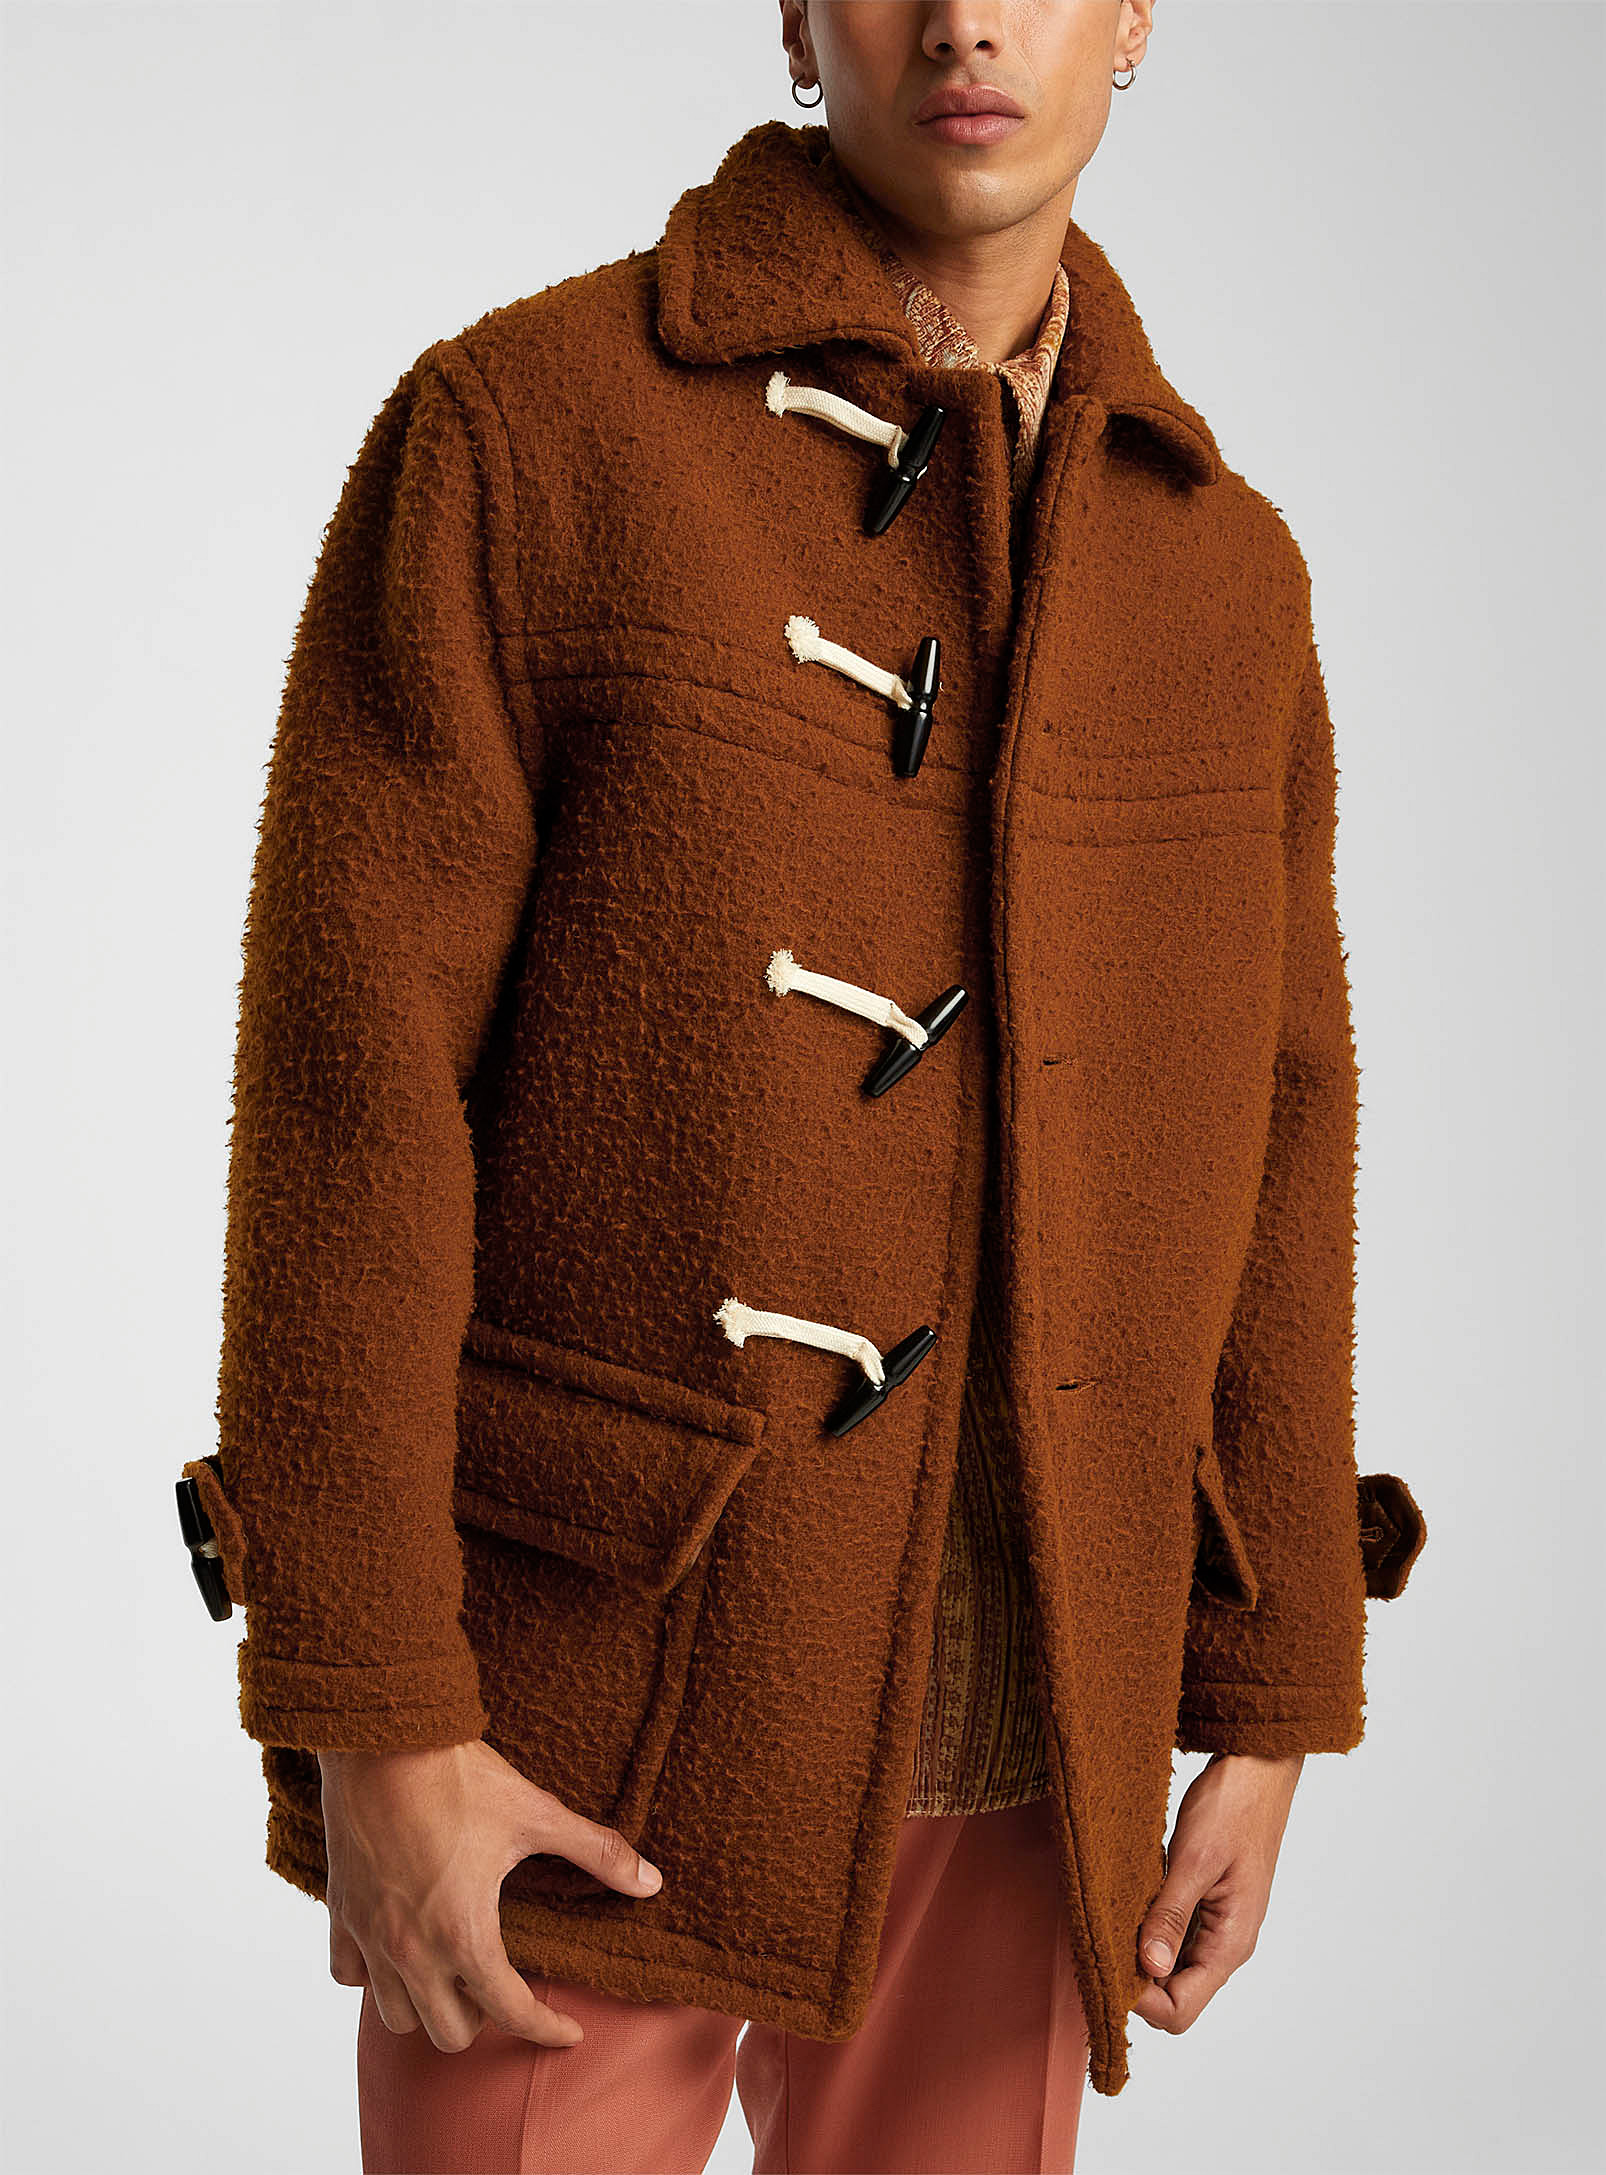 Cmmn Swdn - Men's Fuzzy pure wool duffle coat